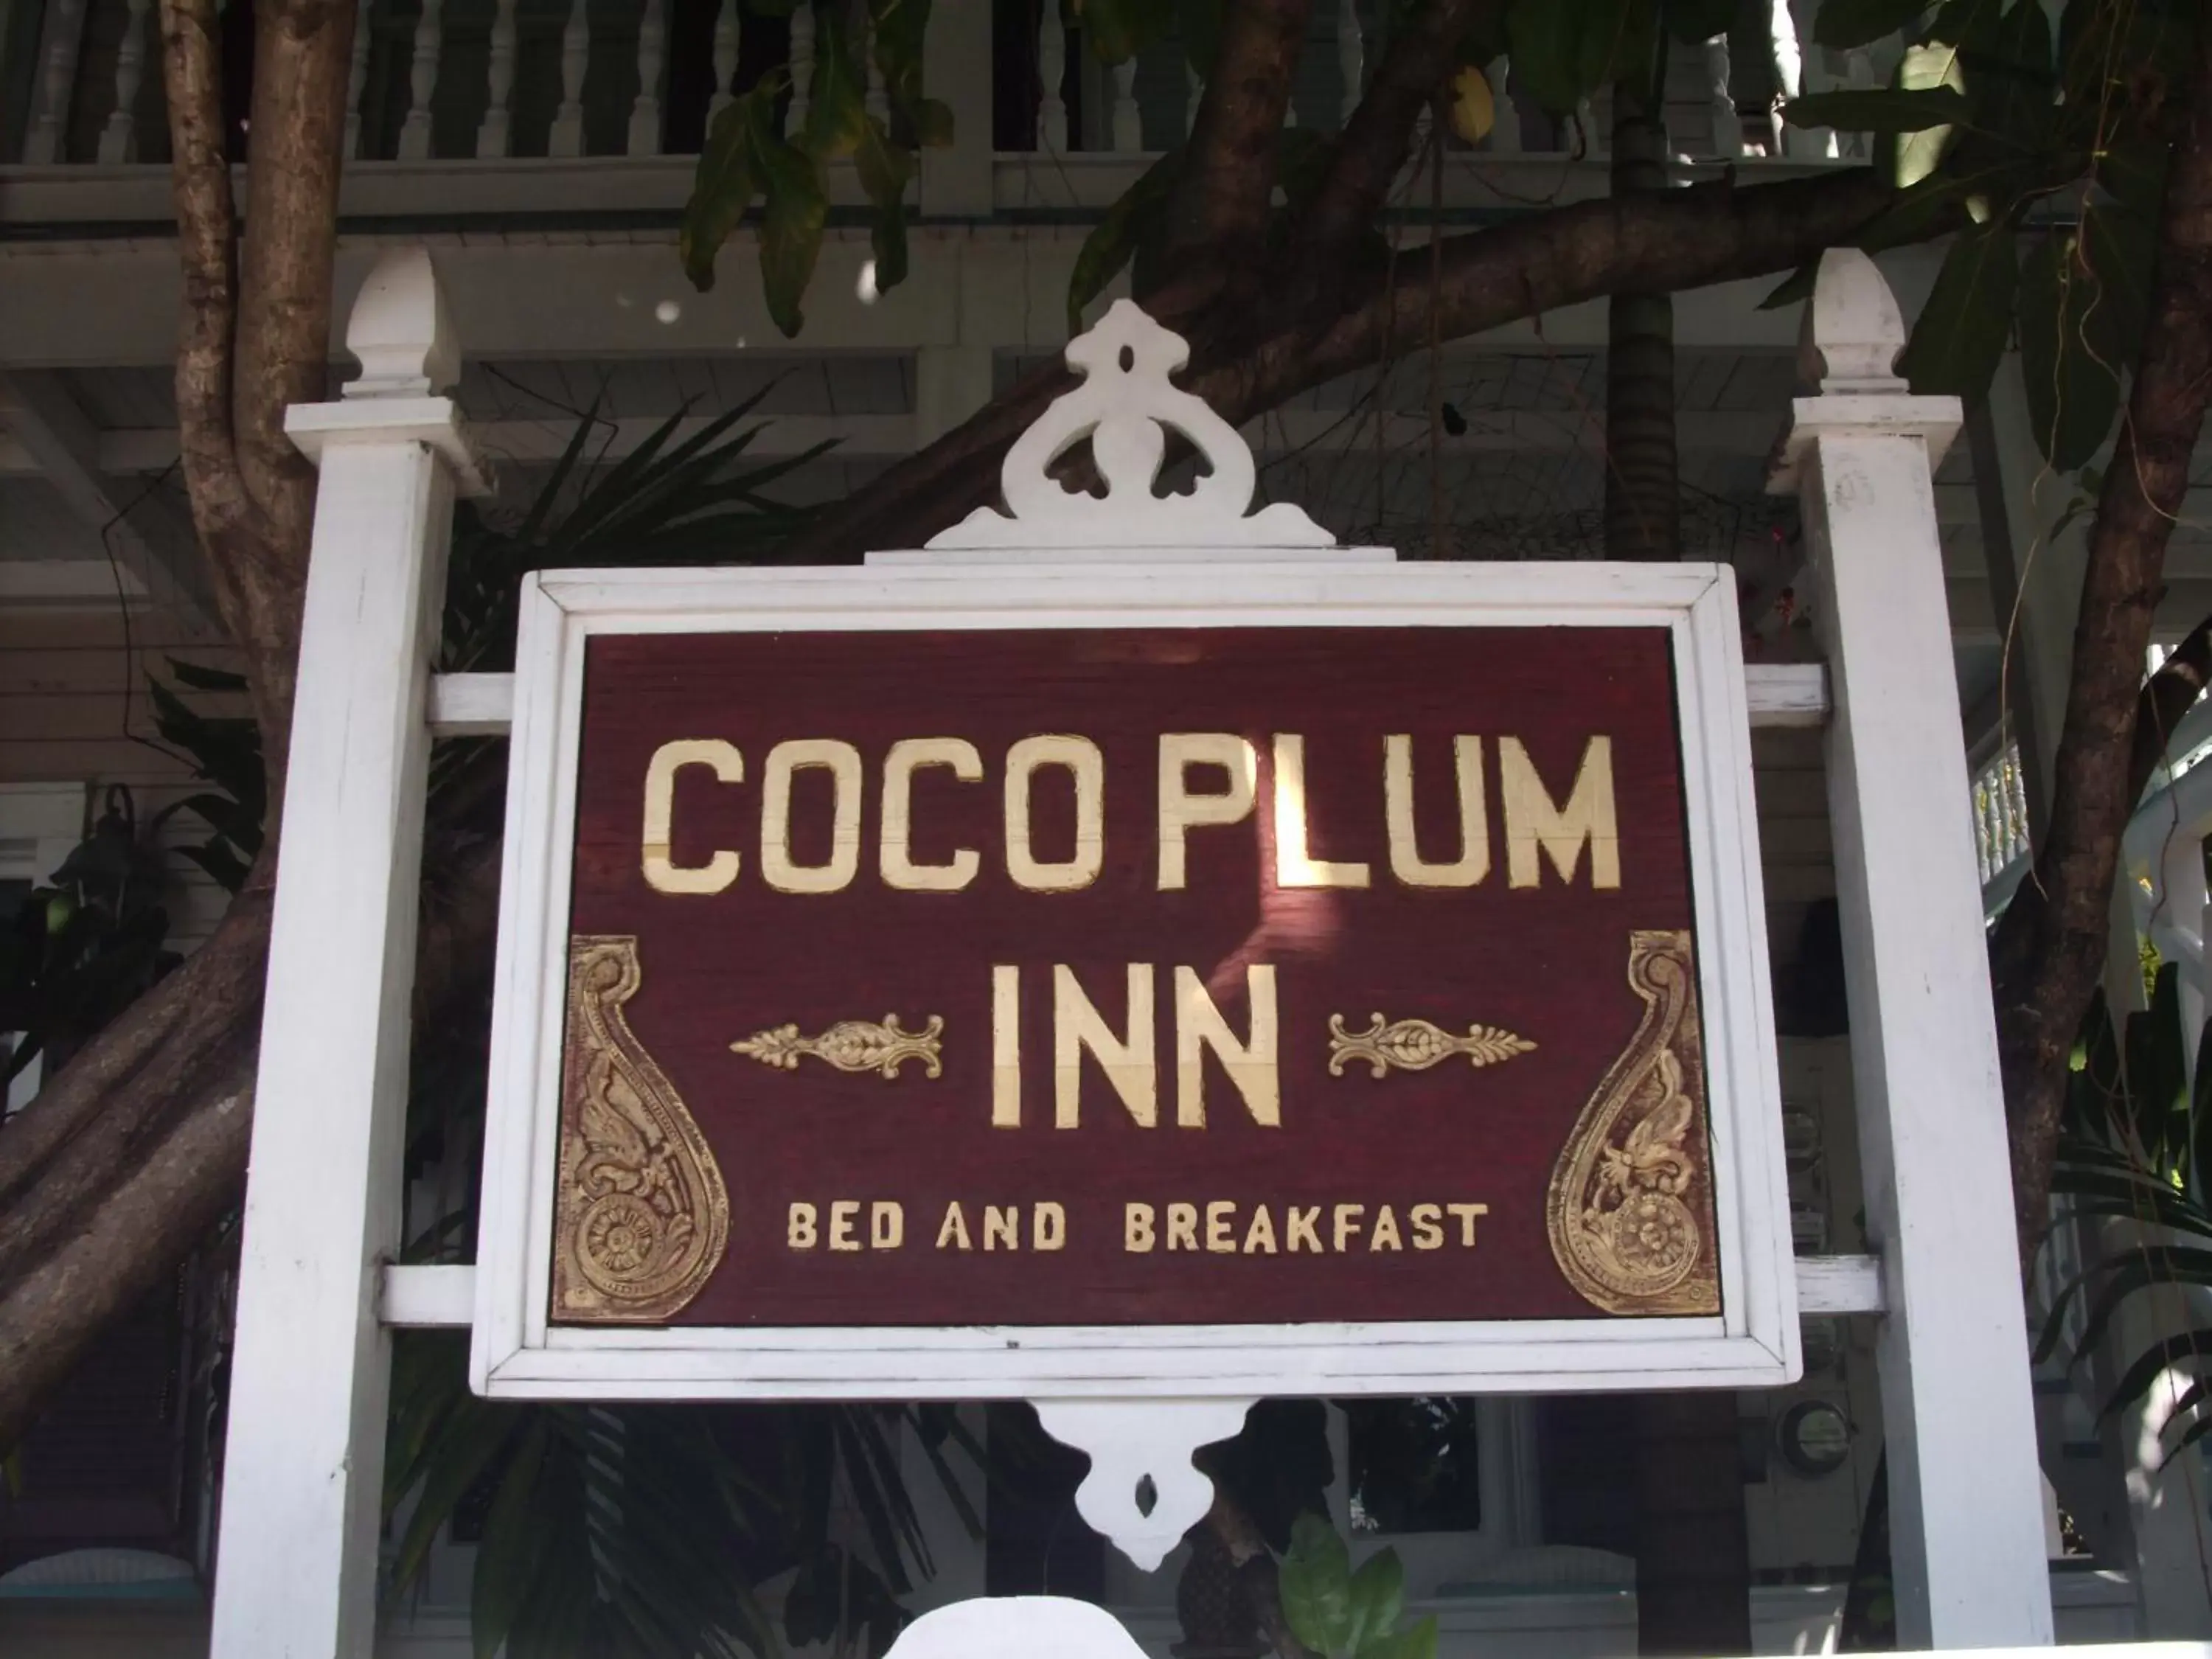 Decorative detail in Coco Plum Inn